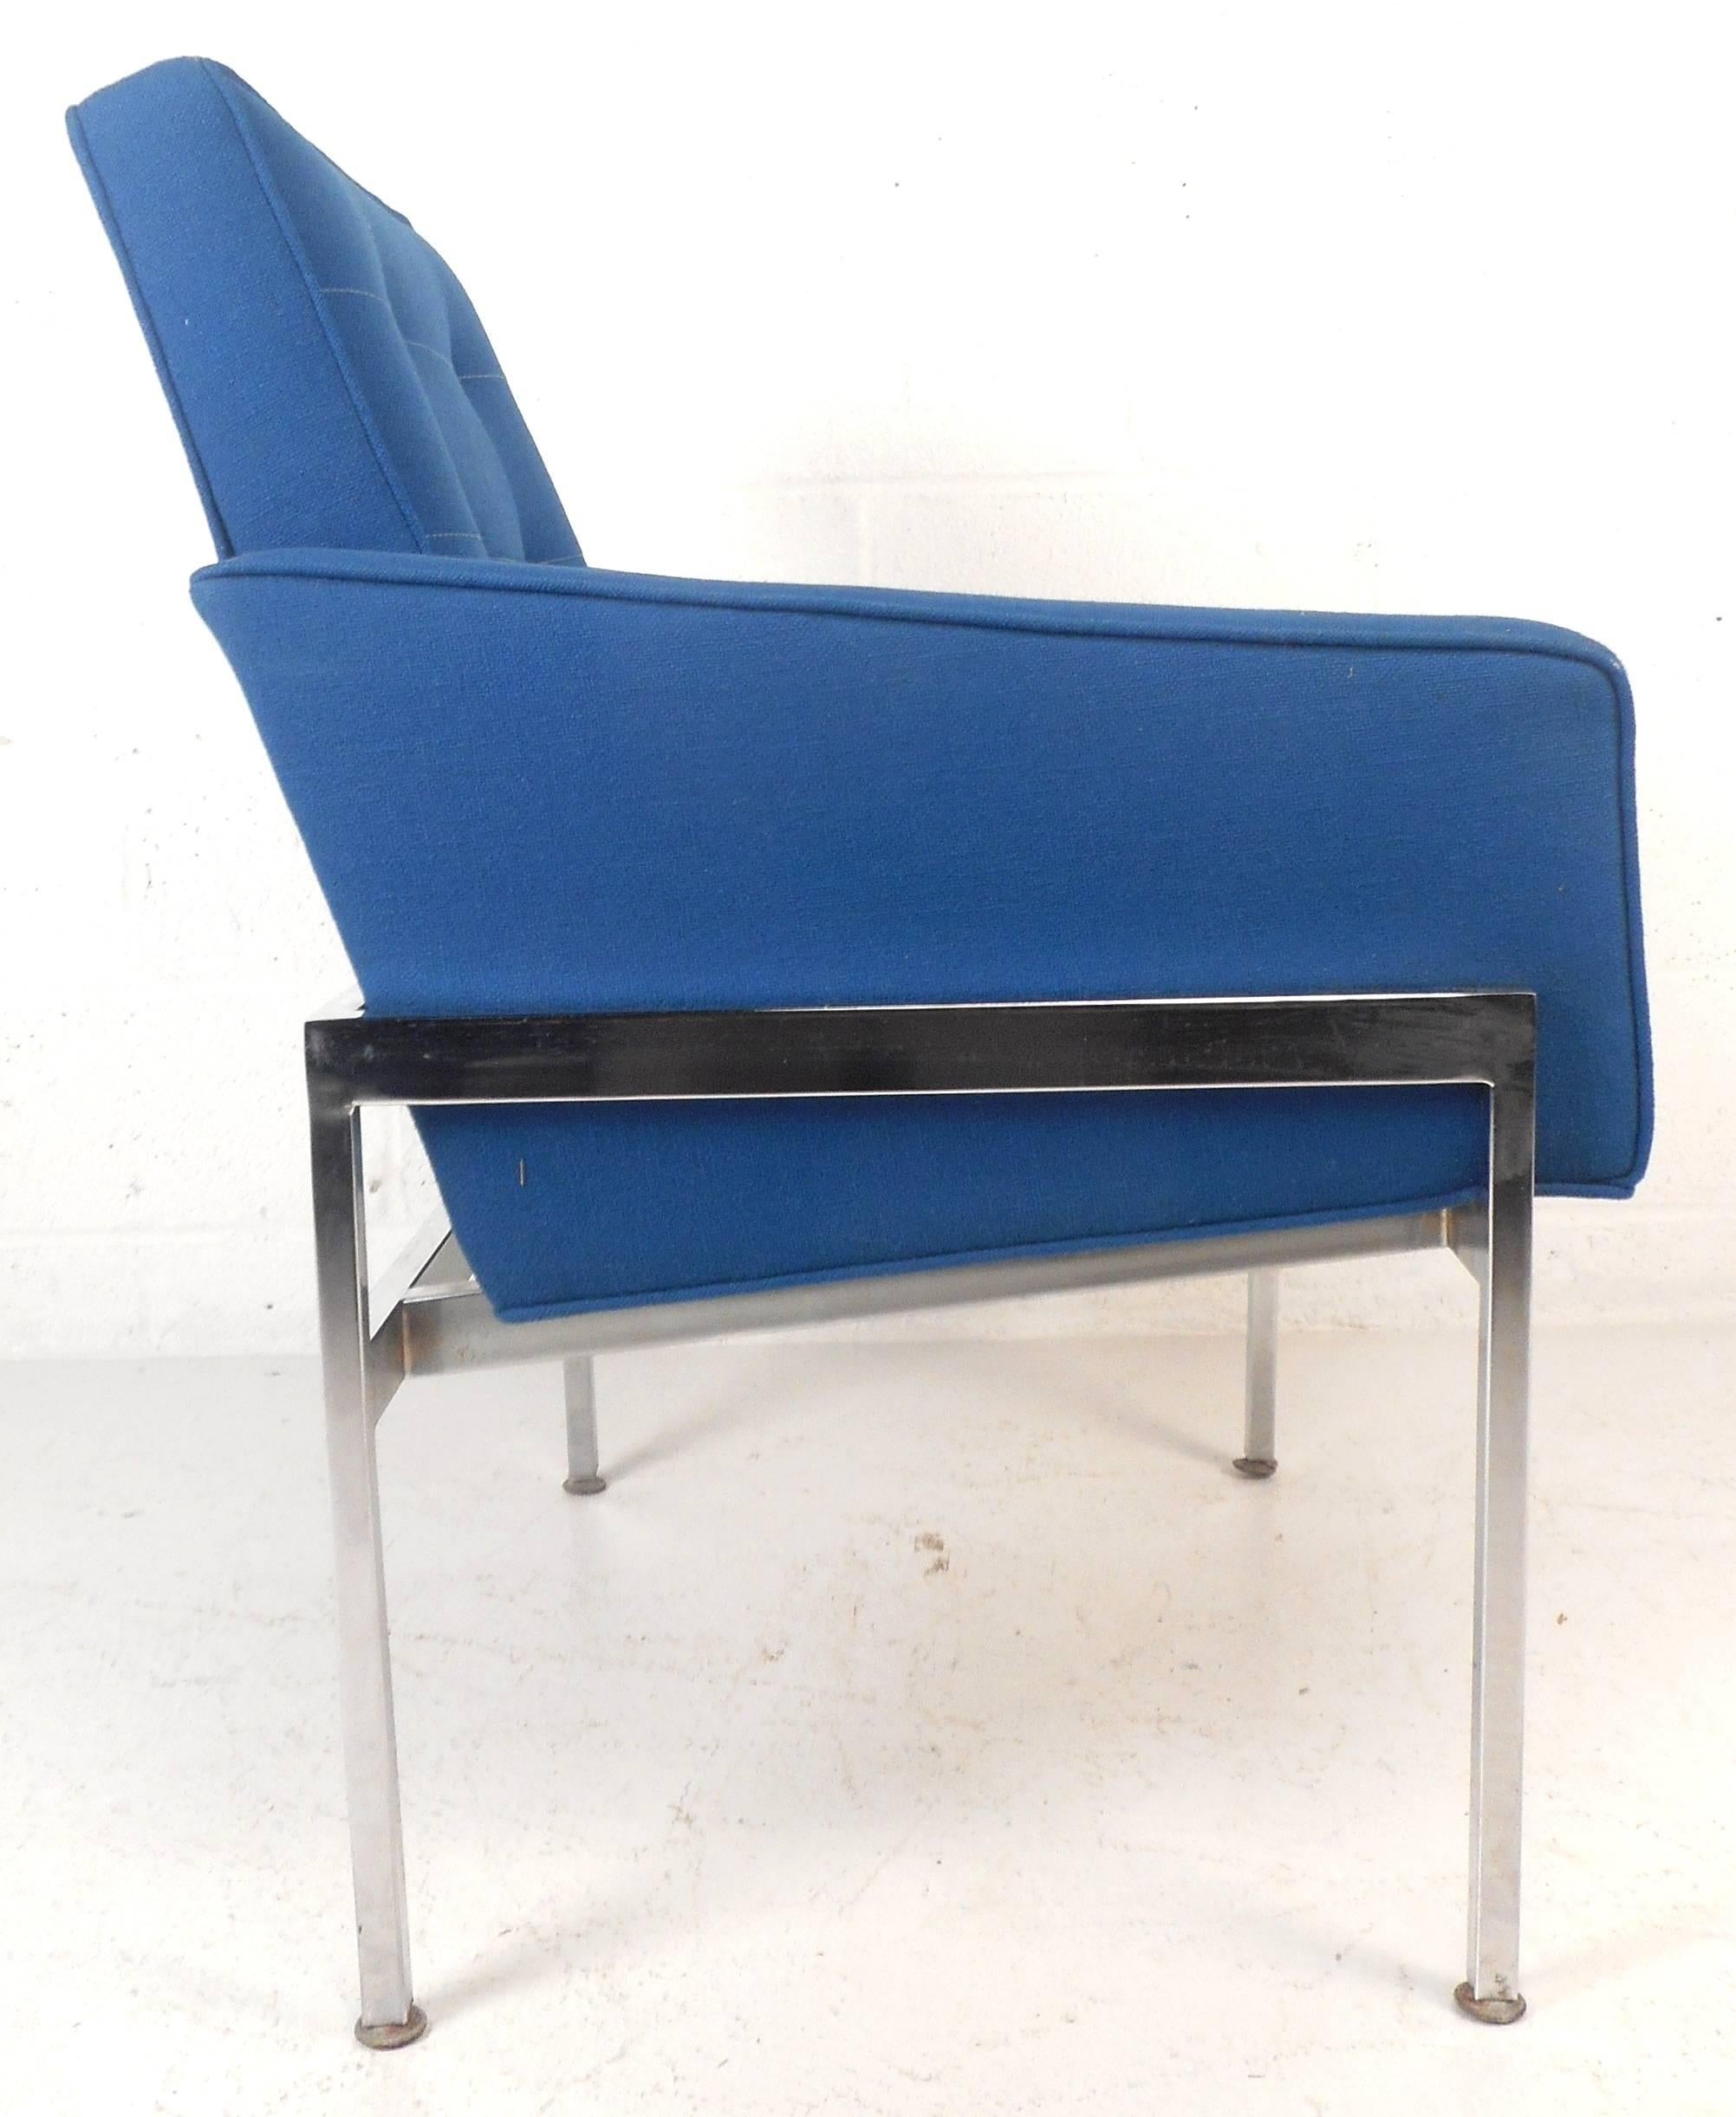 Cette élégante paire de chaises longues modernes du milieu du siècle présente une lourde structure chromée et un rembourrage bleu royal. Design épuré avec dossier incliné et accoudoirs bas pour un confort accru. Le tissu doux et les sièges